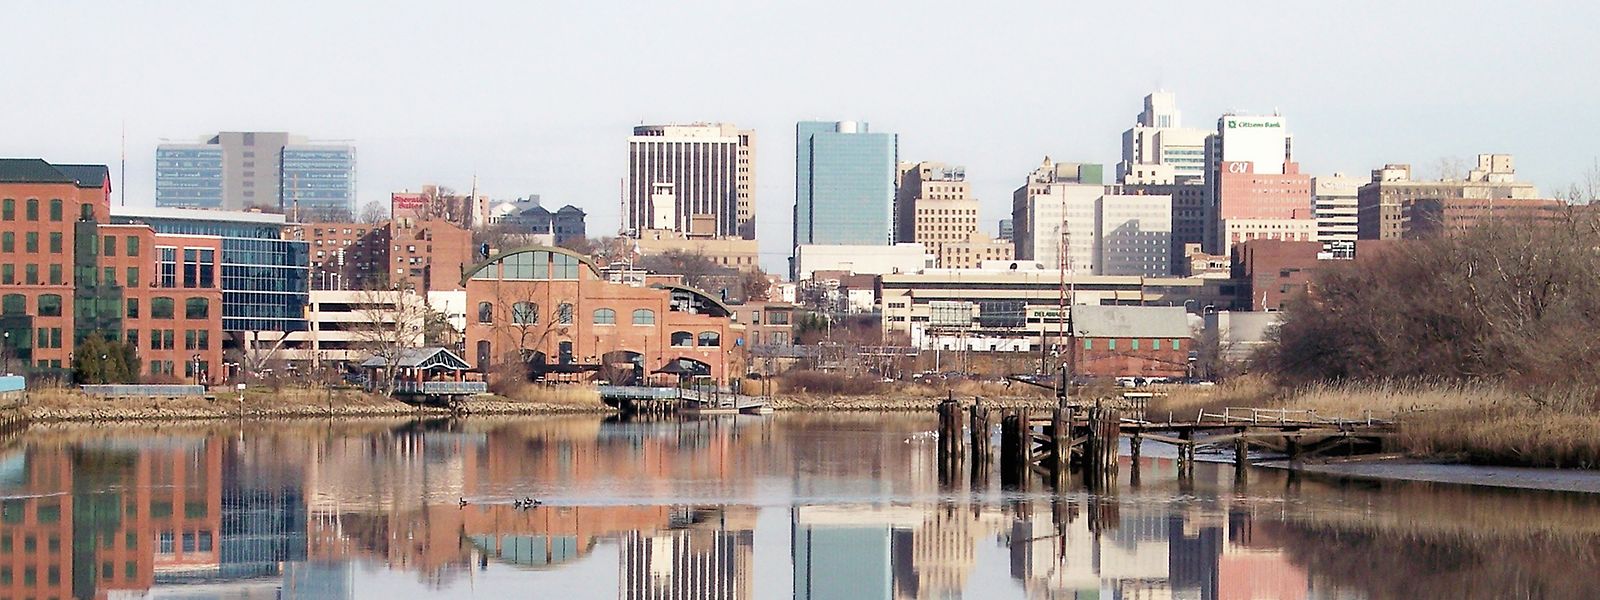 Eine Million Unternehmen haben ihren Firmensitz im kleinen Bundesstaat Delaware und dessen Hauptstadt Wilmington.